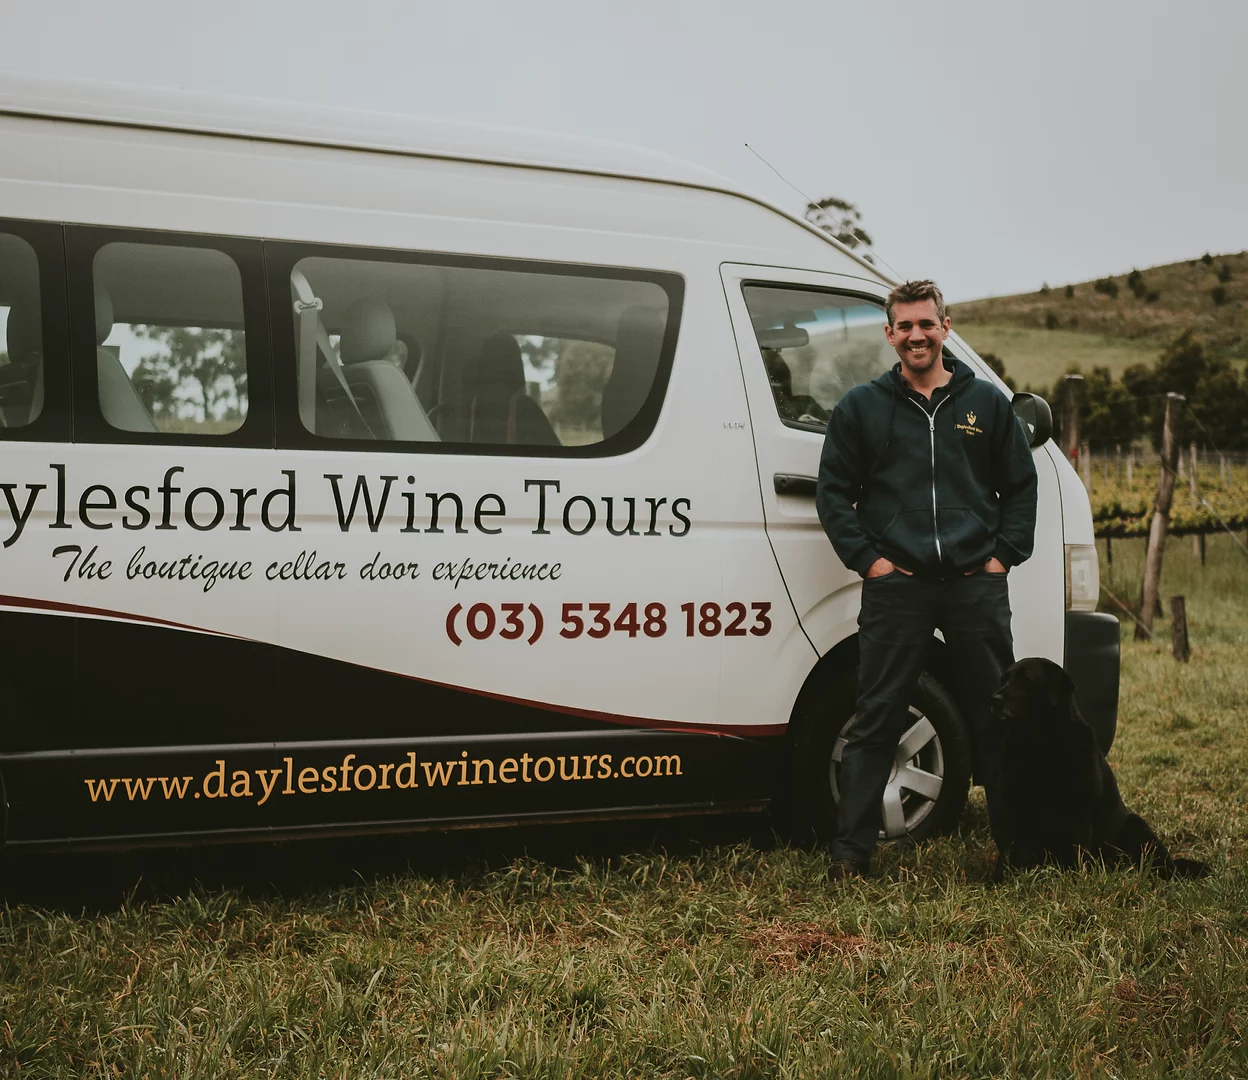 Daylesford Wine Tours